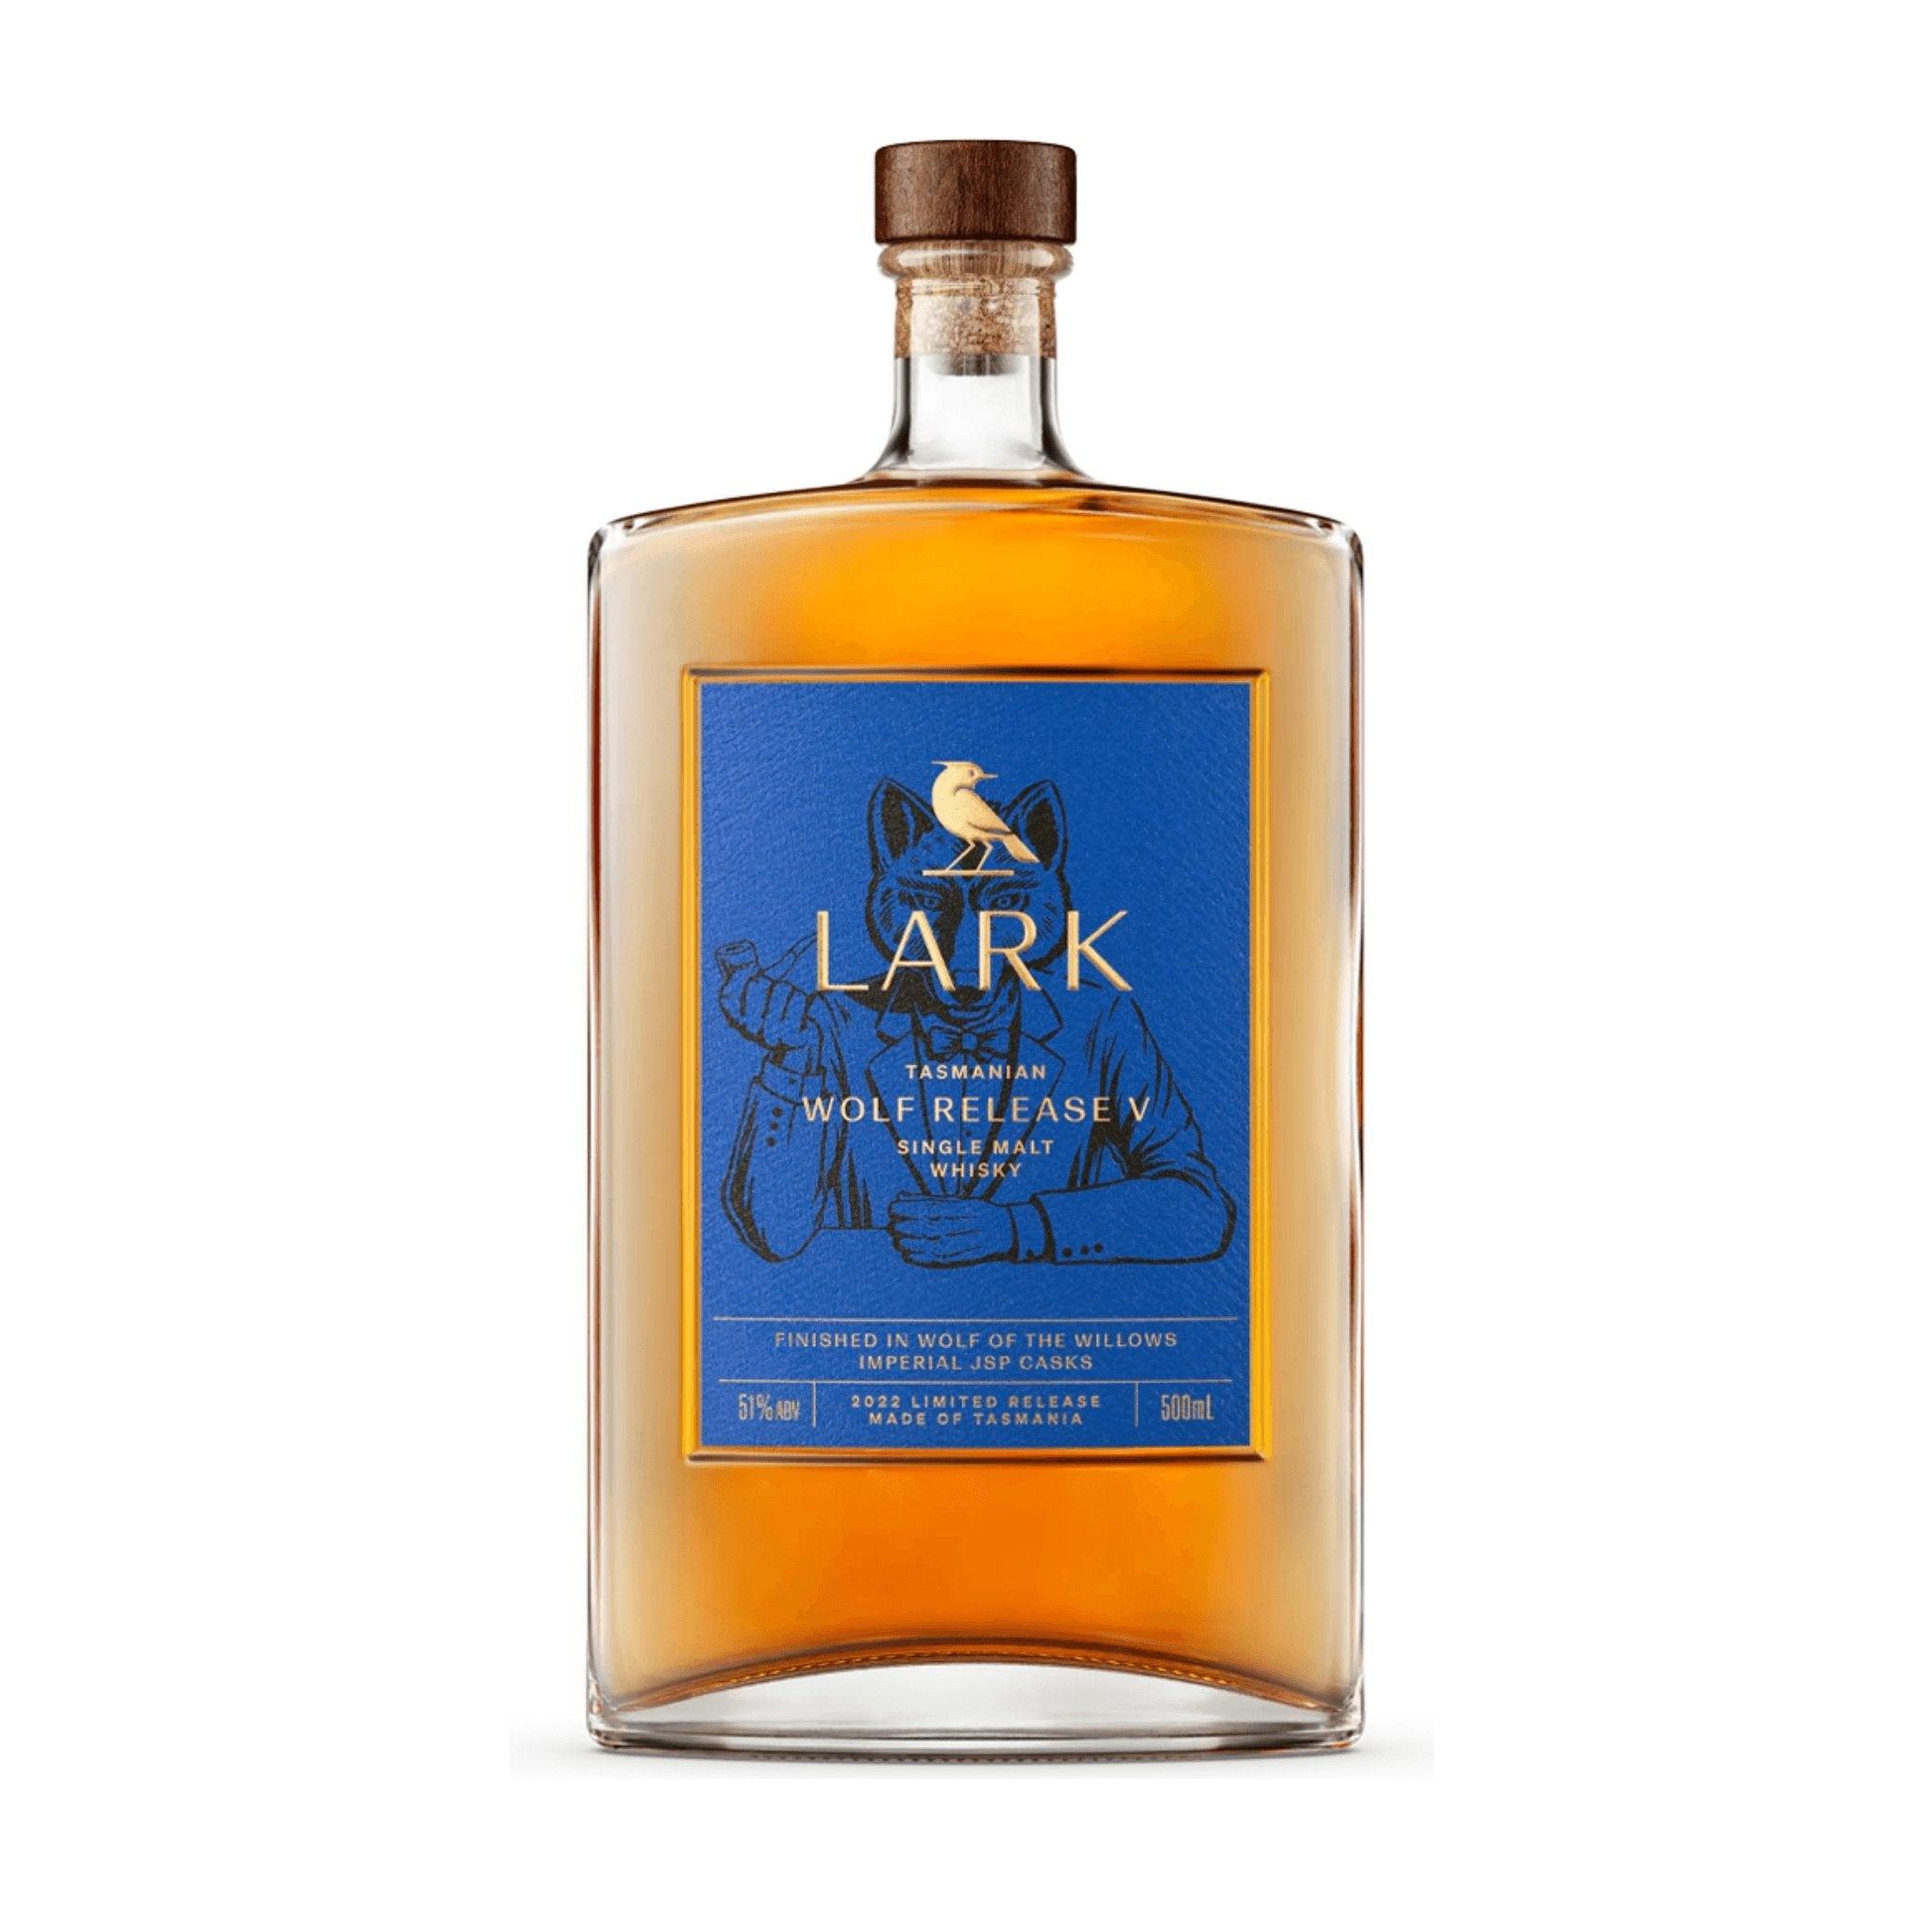 ウィスキー「LARK」 WOLF RELEASE V 【一部予約販売】 - ウイスキー